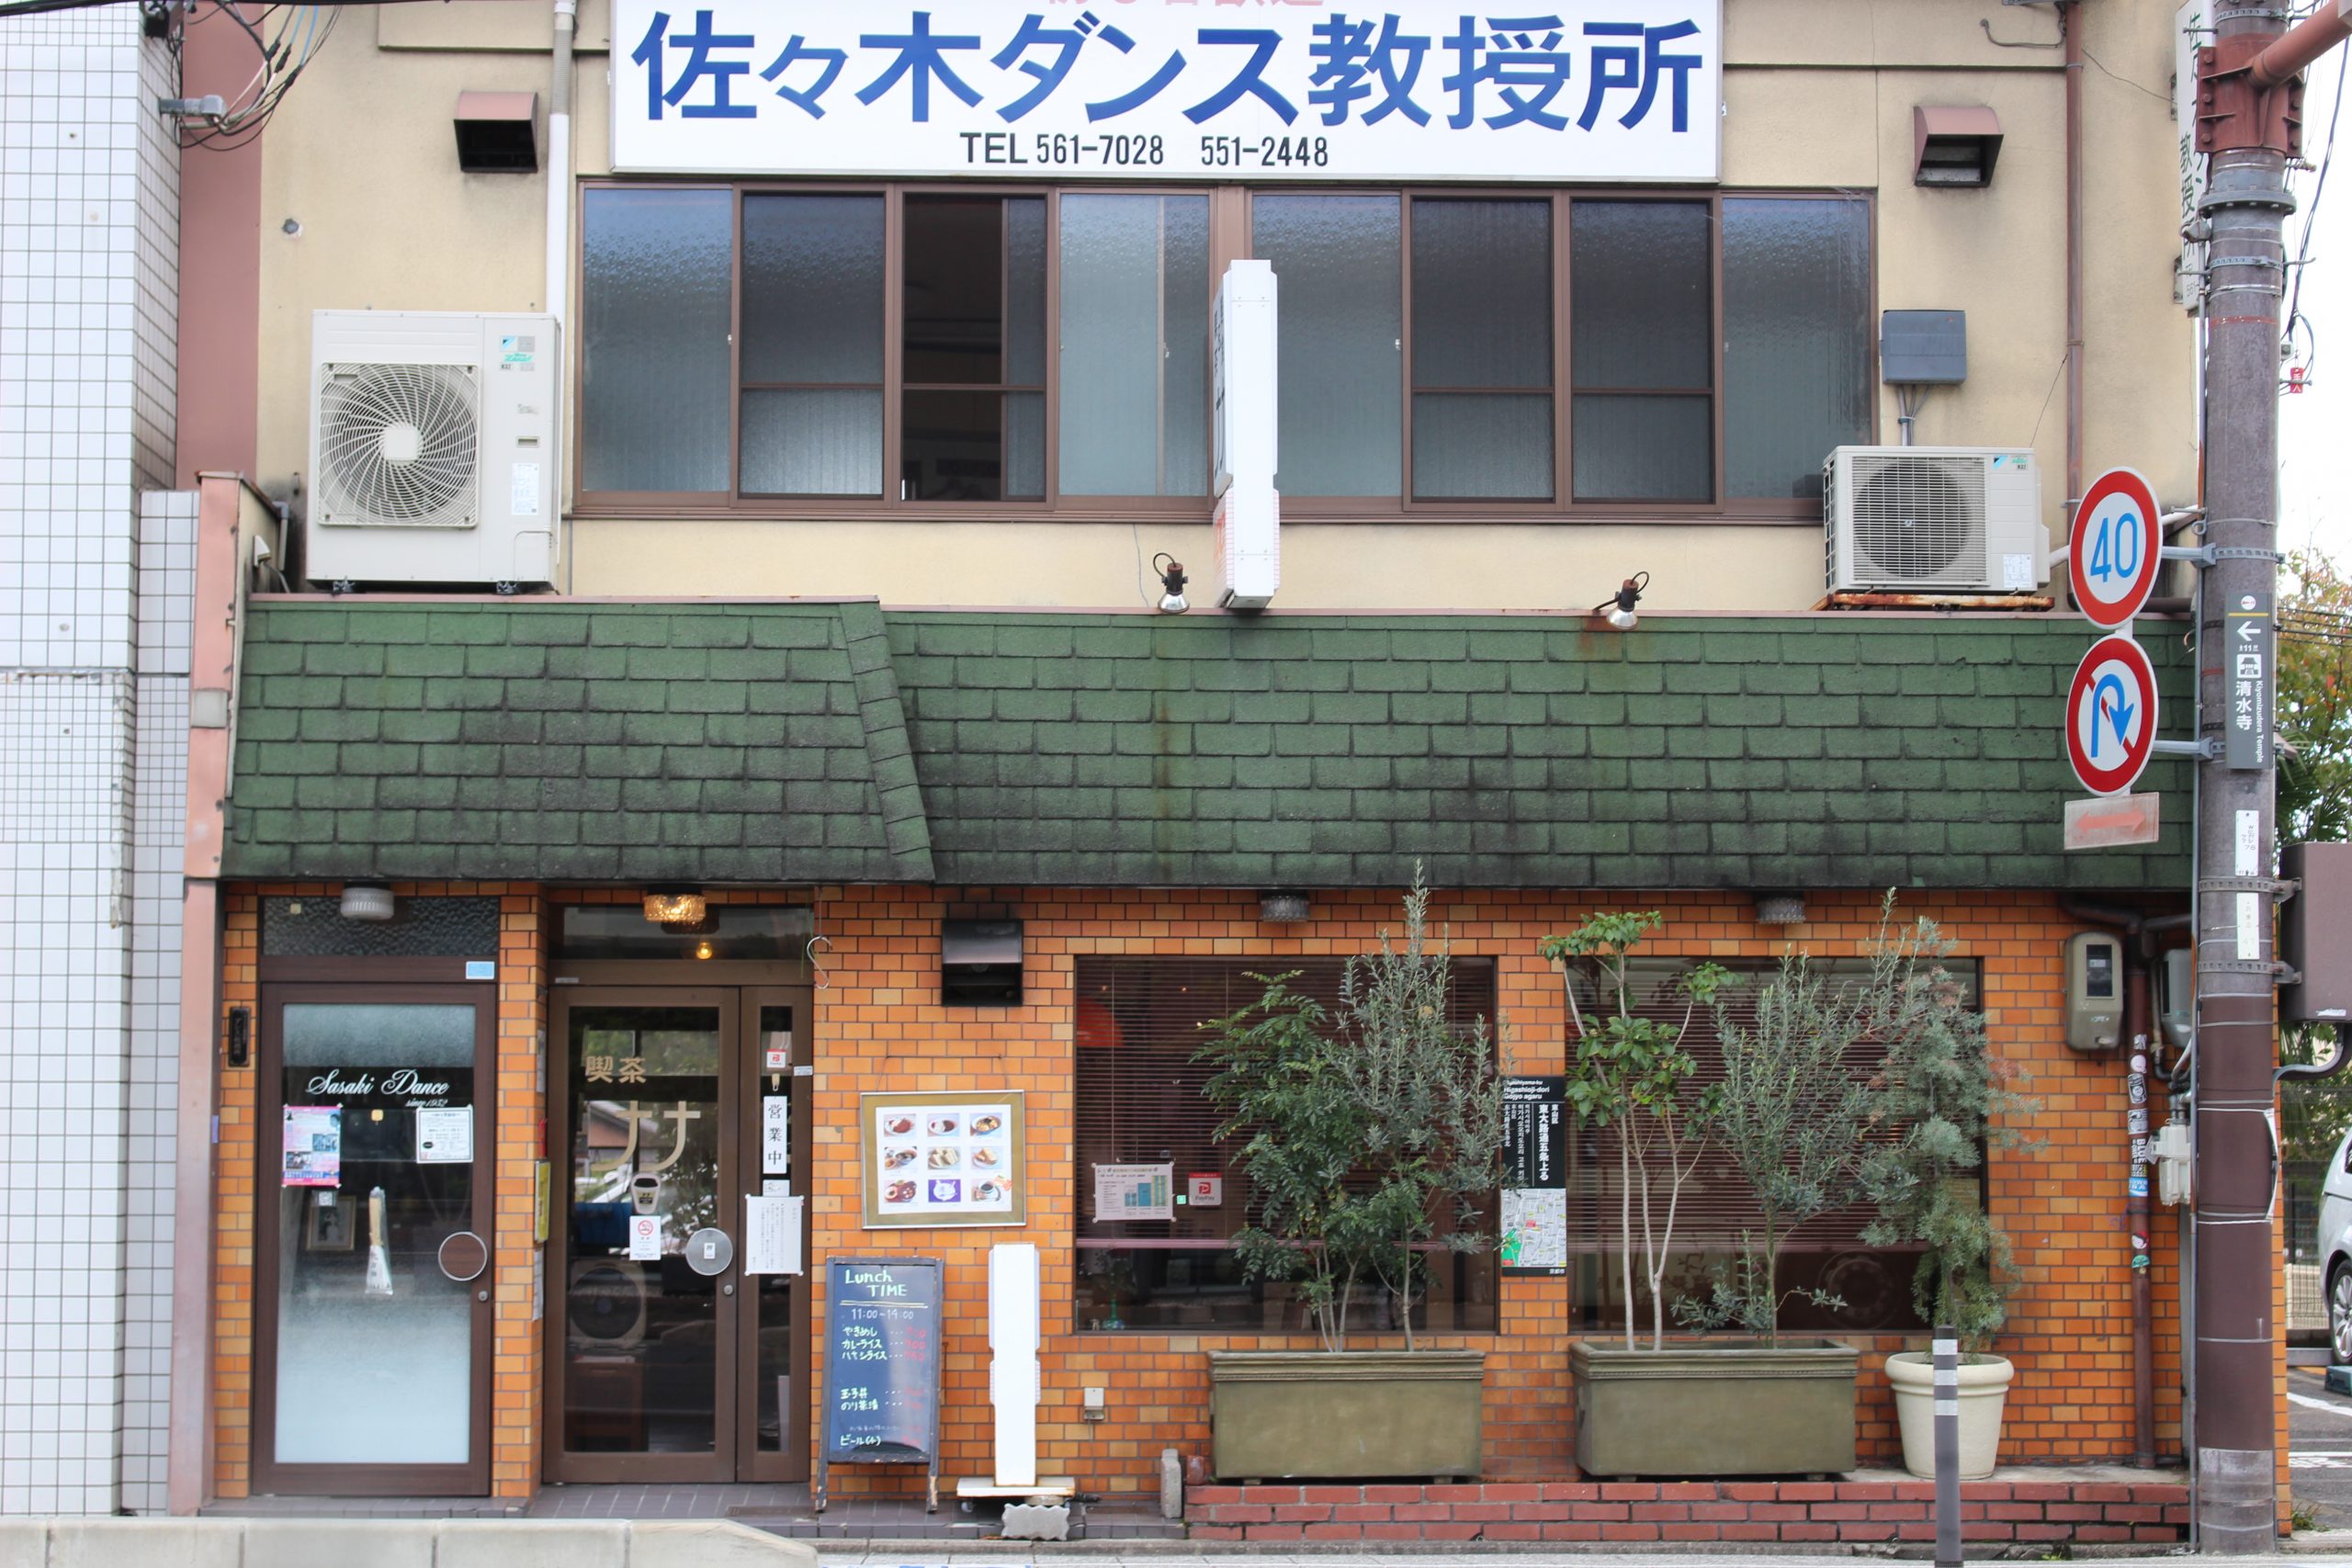 京都五条 喫茶 軽食ナナ のモーニング 昭和40年創業のザ 喫茶店 京都館 京都に暮らす人たちと愛する人たちが京都を伝えるwebメディア京都館 京都に暮らす人たちと愛する人たちが京都を伝えるwebメディア